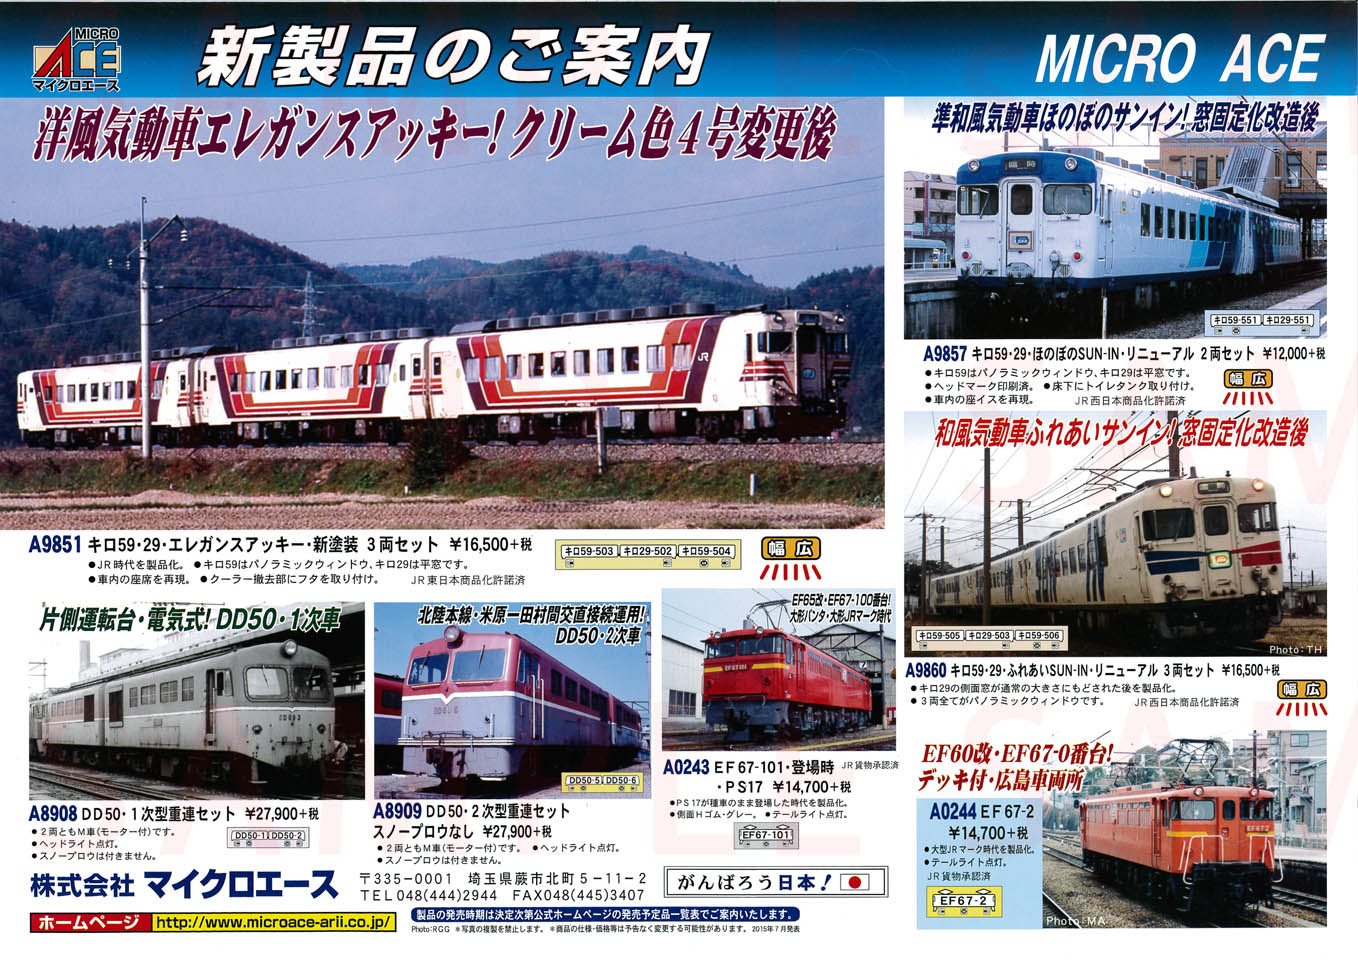 キロ59・29 ふれあいSUN-IN リニューアル (3両セット) (鉄道模型